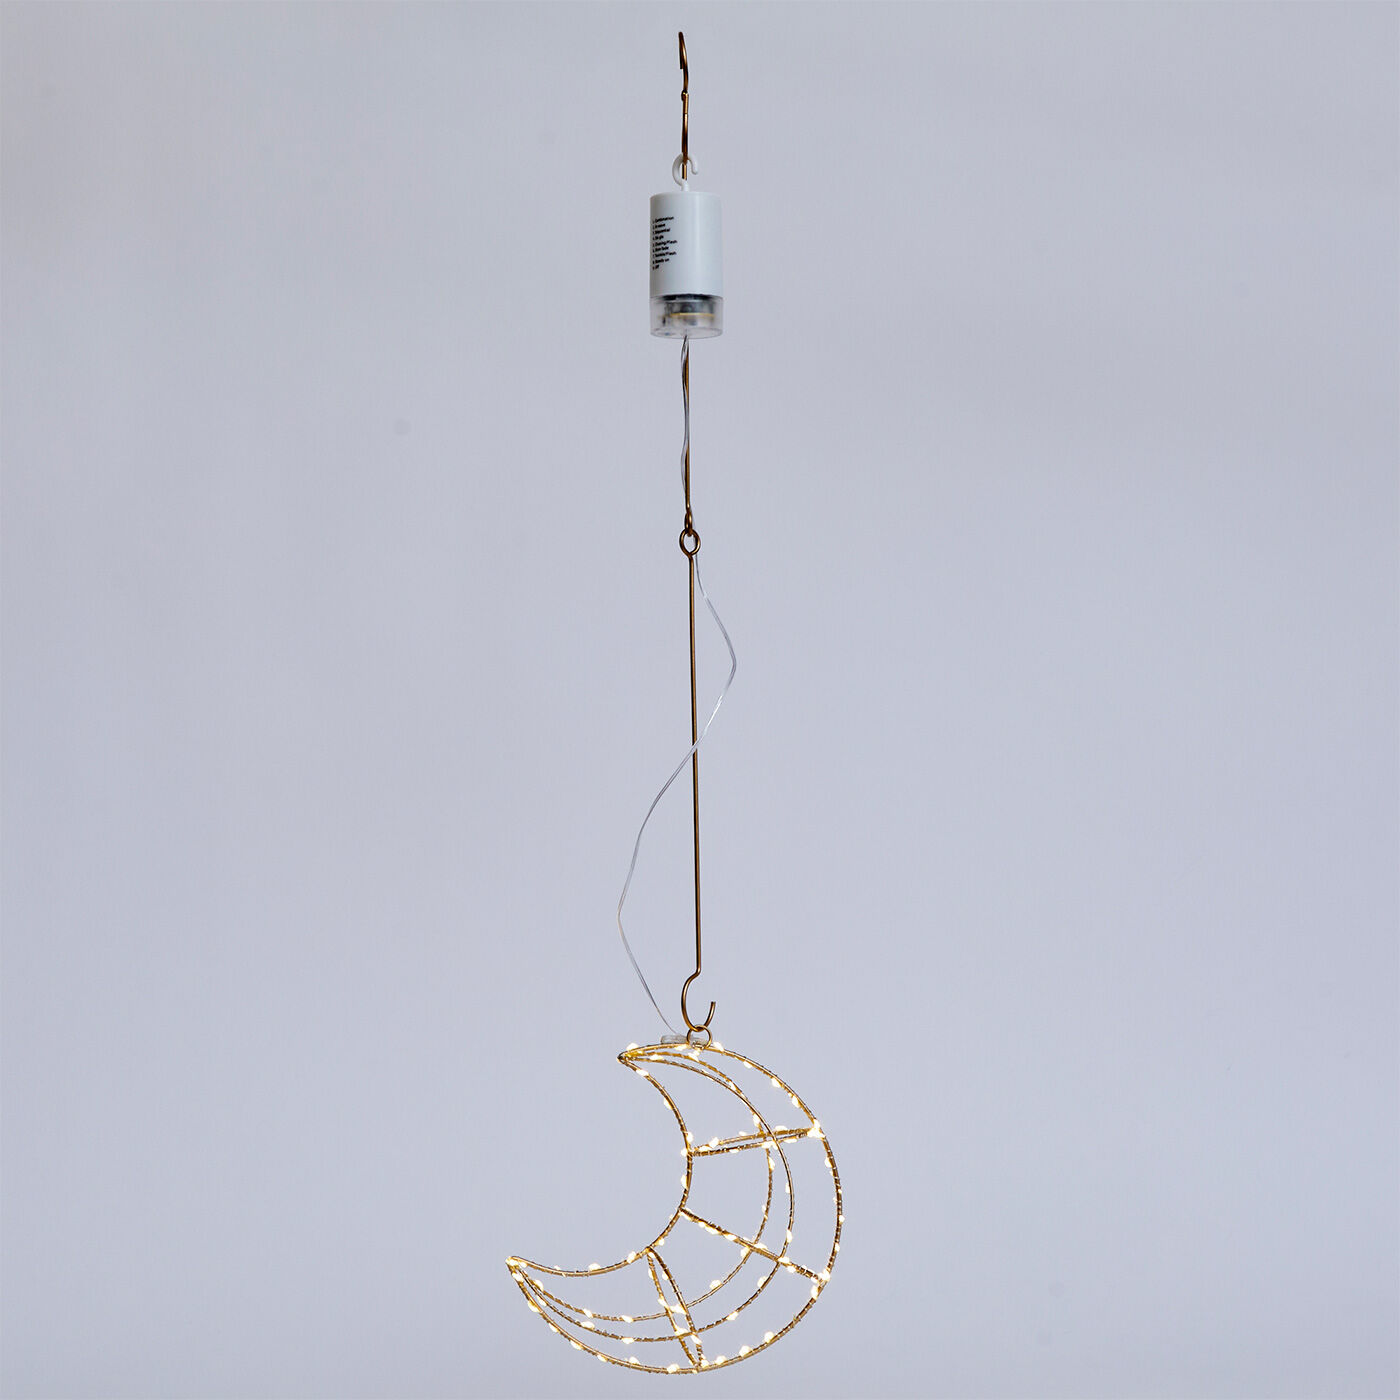 SeeMONO|お部屋を光でデコレーション　吊るして飾るワイヤーワークのＬＥＤライト〈ＭＯＯＮ〉|吊り下げる場合は必ずフックをご使用ください。